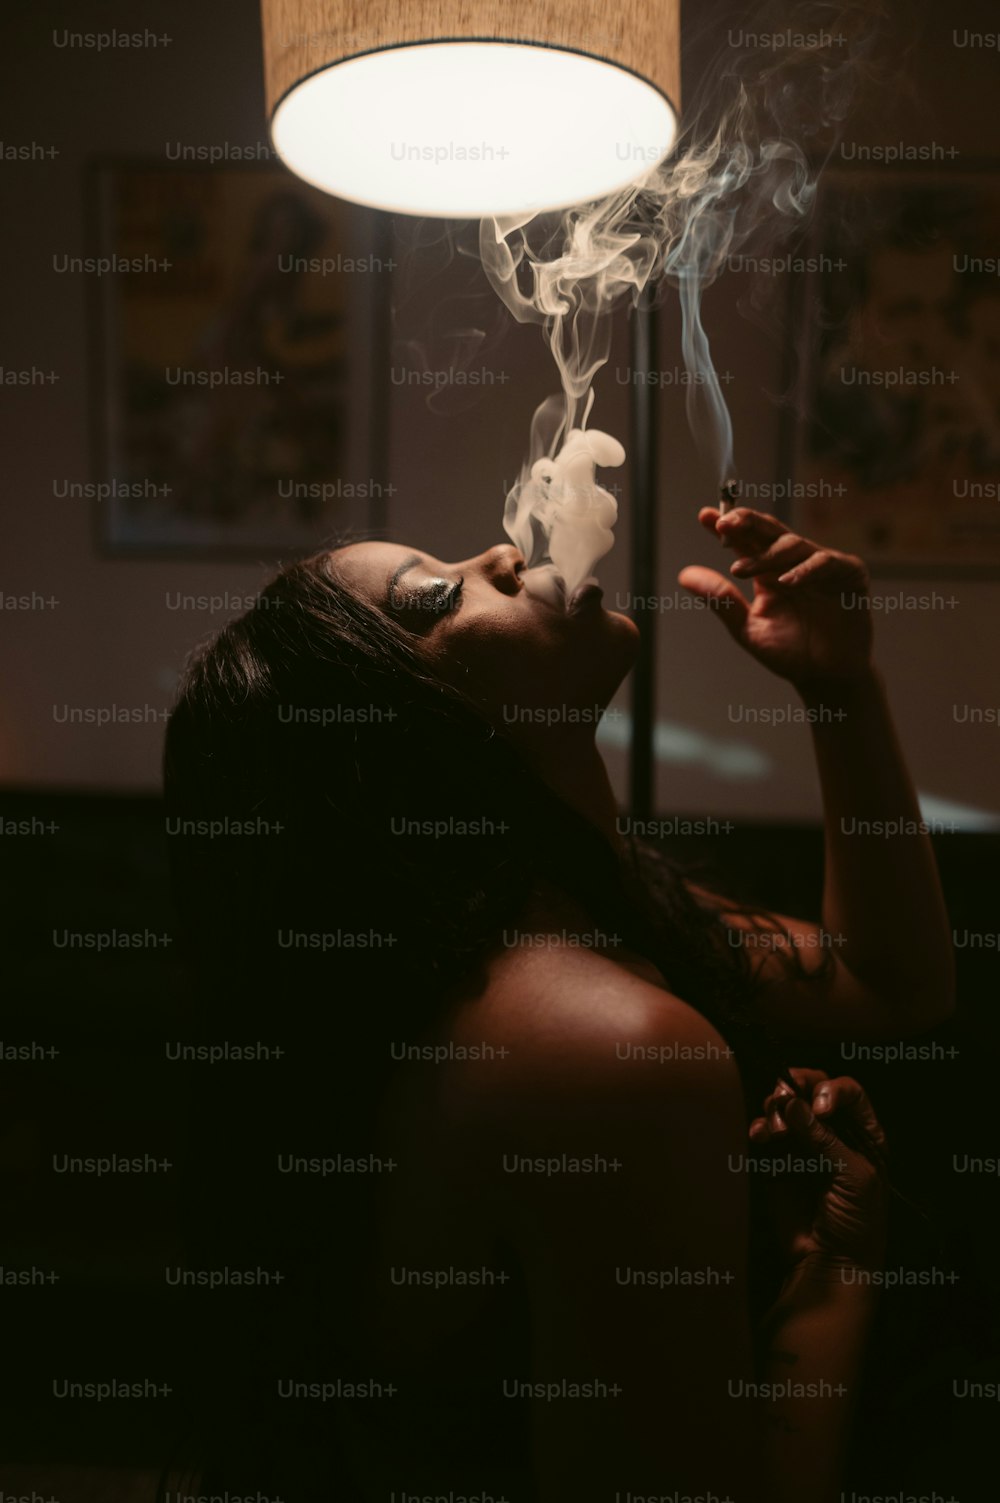 Eine Frau, die in einem dunklen Raum eine Zigarette raucht